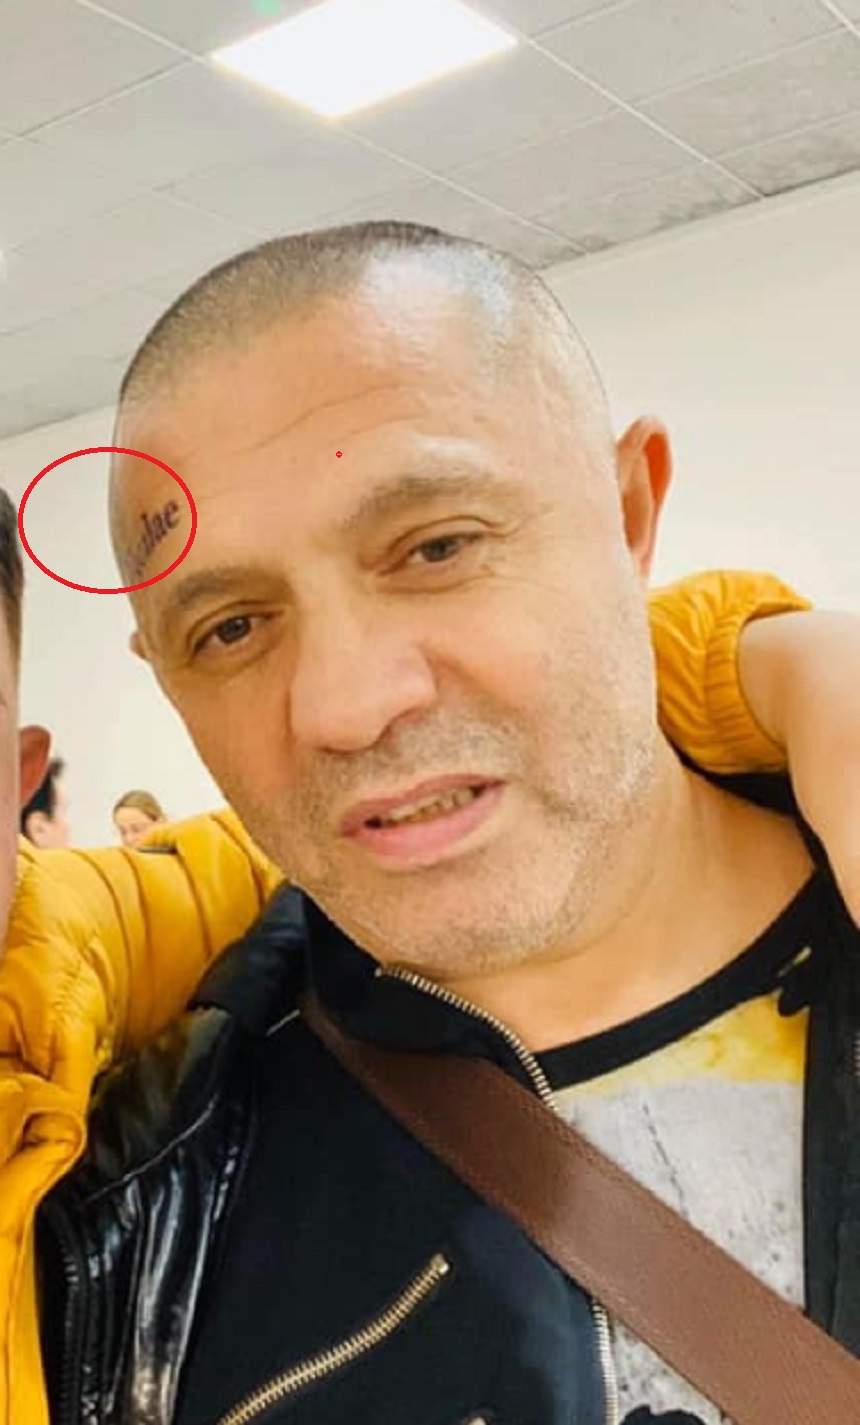 FOTO / Nicolae Guță, ce ți-ai făcut la frunte? După ce și-a scris „Niculae” pe față, manelistul și-a făcut un alt tatuaj